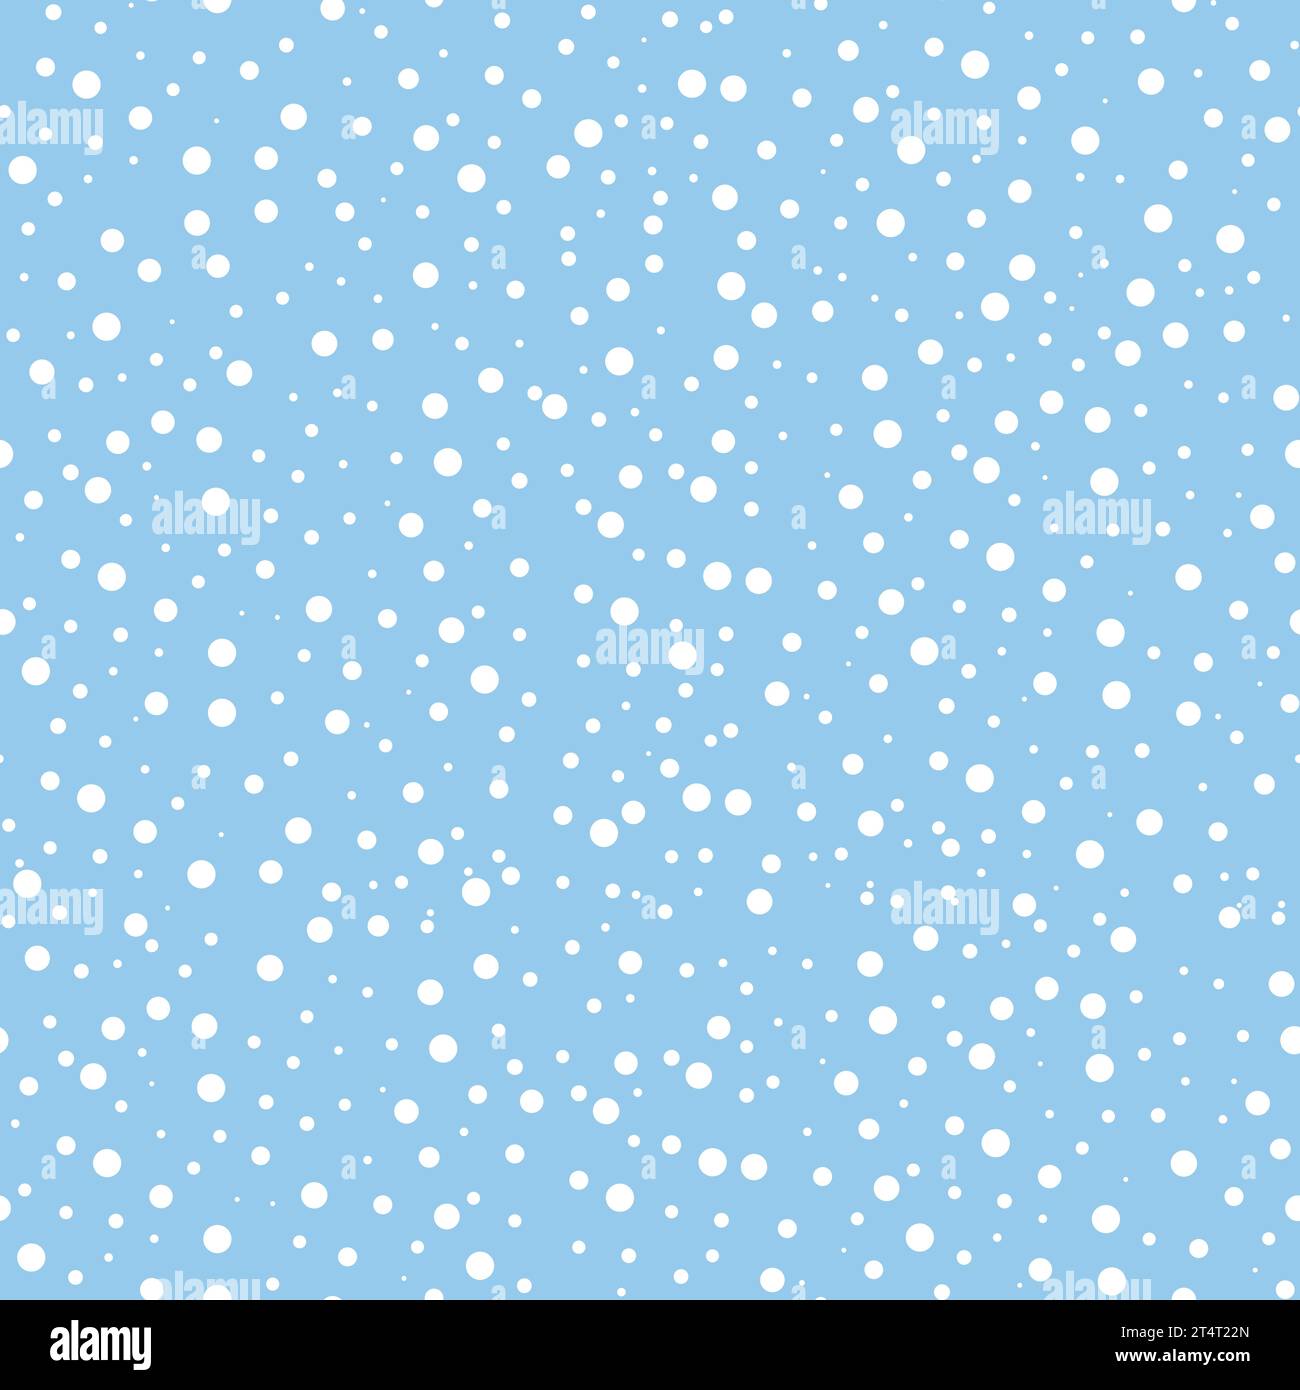 Nahtloses Schneefall-Muster. Schnee fällt auf blauem Hintergrund. Einfacher Winterdruck für Verpackungsdesign, Broschüren, Flyer, Textilien und Tapeten, Vektor Stock Vektor